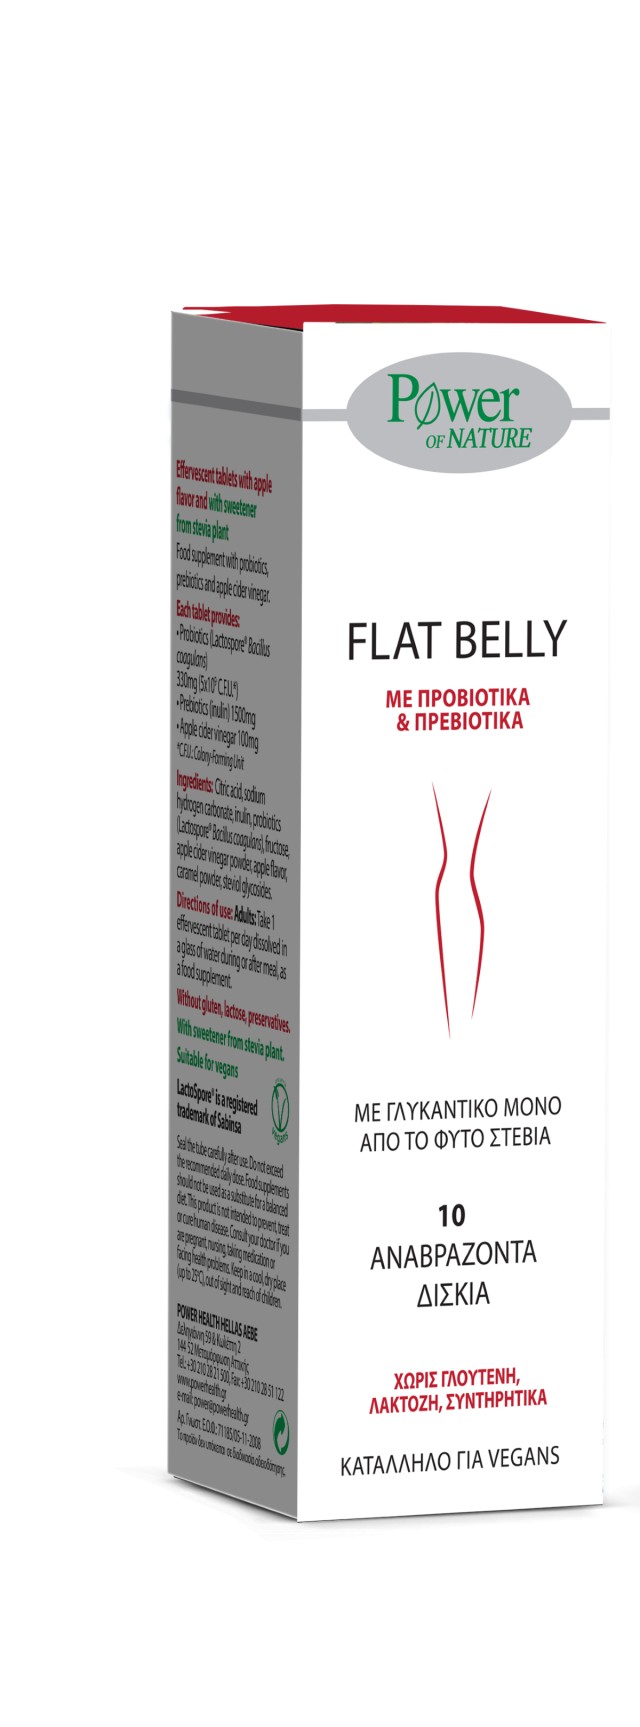 Power Health Flat Belly Συμπλήρωμα Διατροφής Με Προβιοτικά, 10 Αναβράζοντα Δισκία